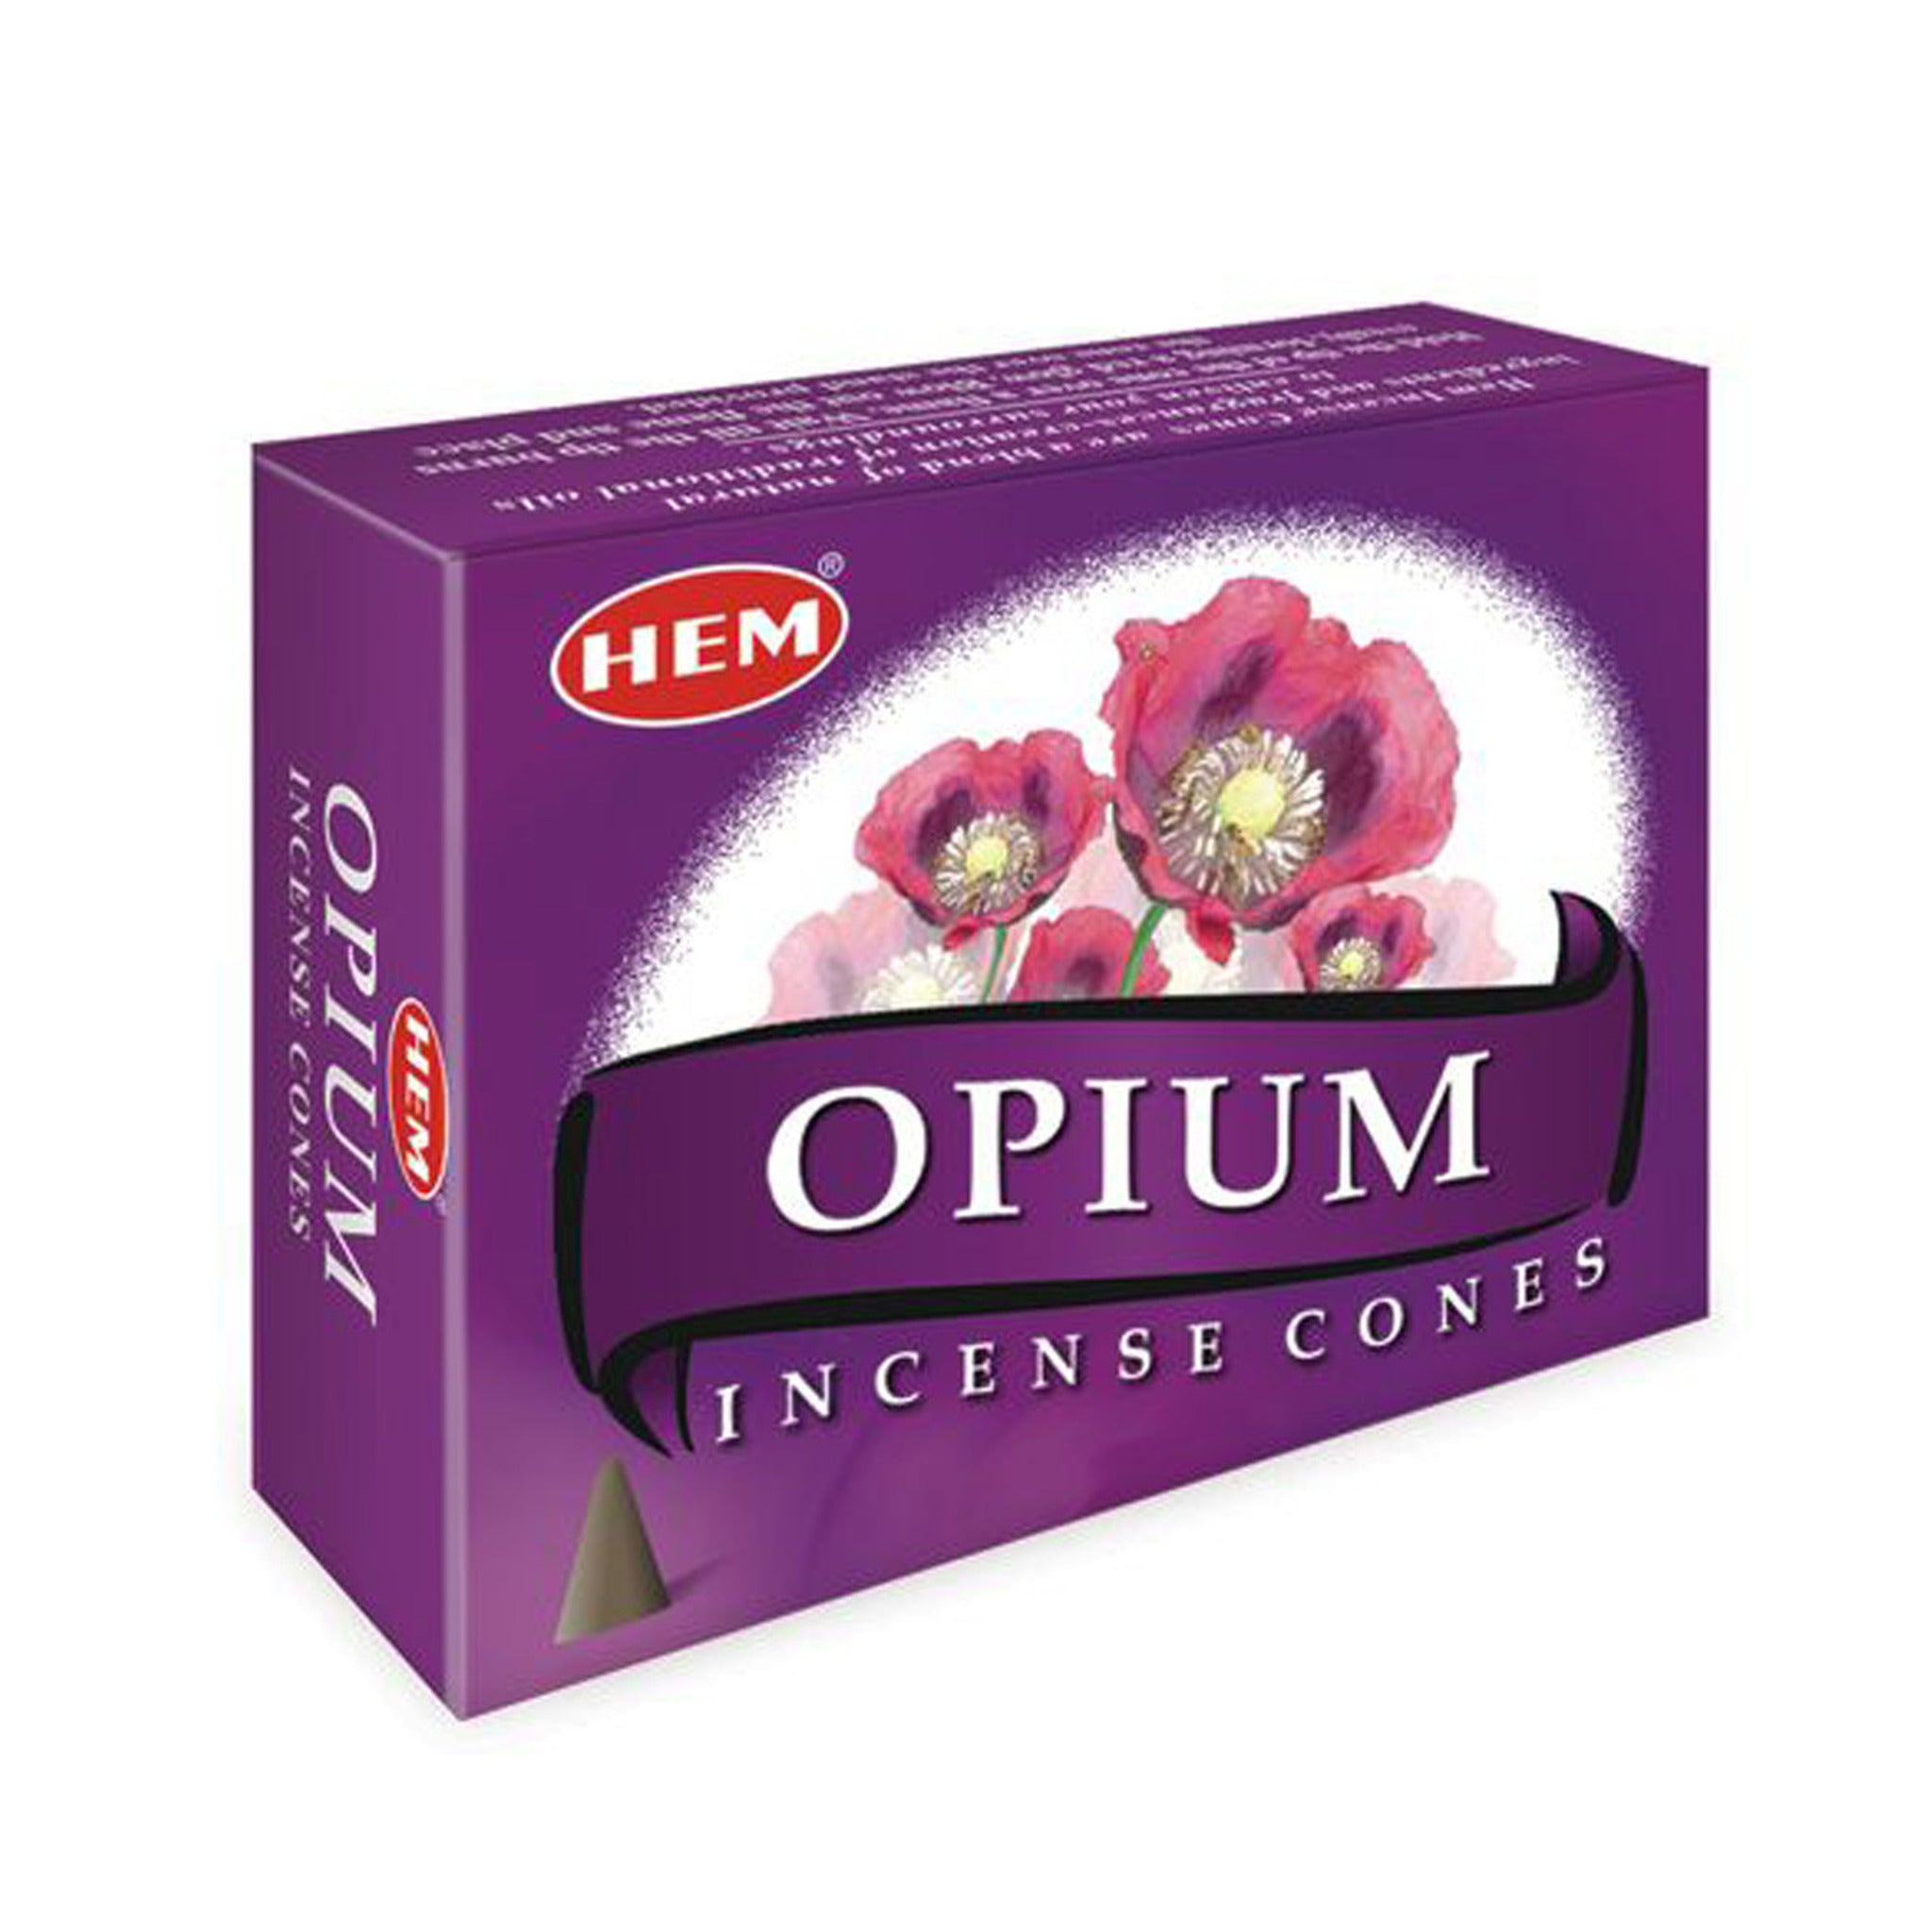 HEM Opium Cone